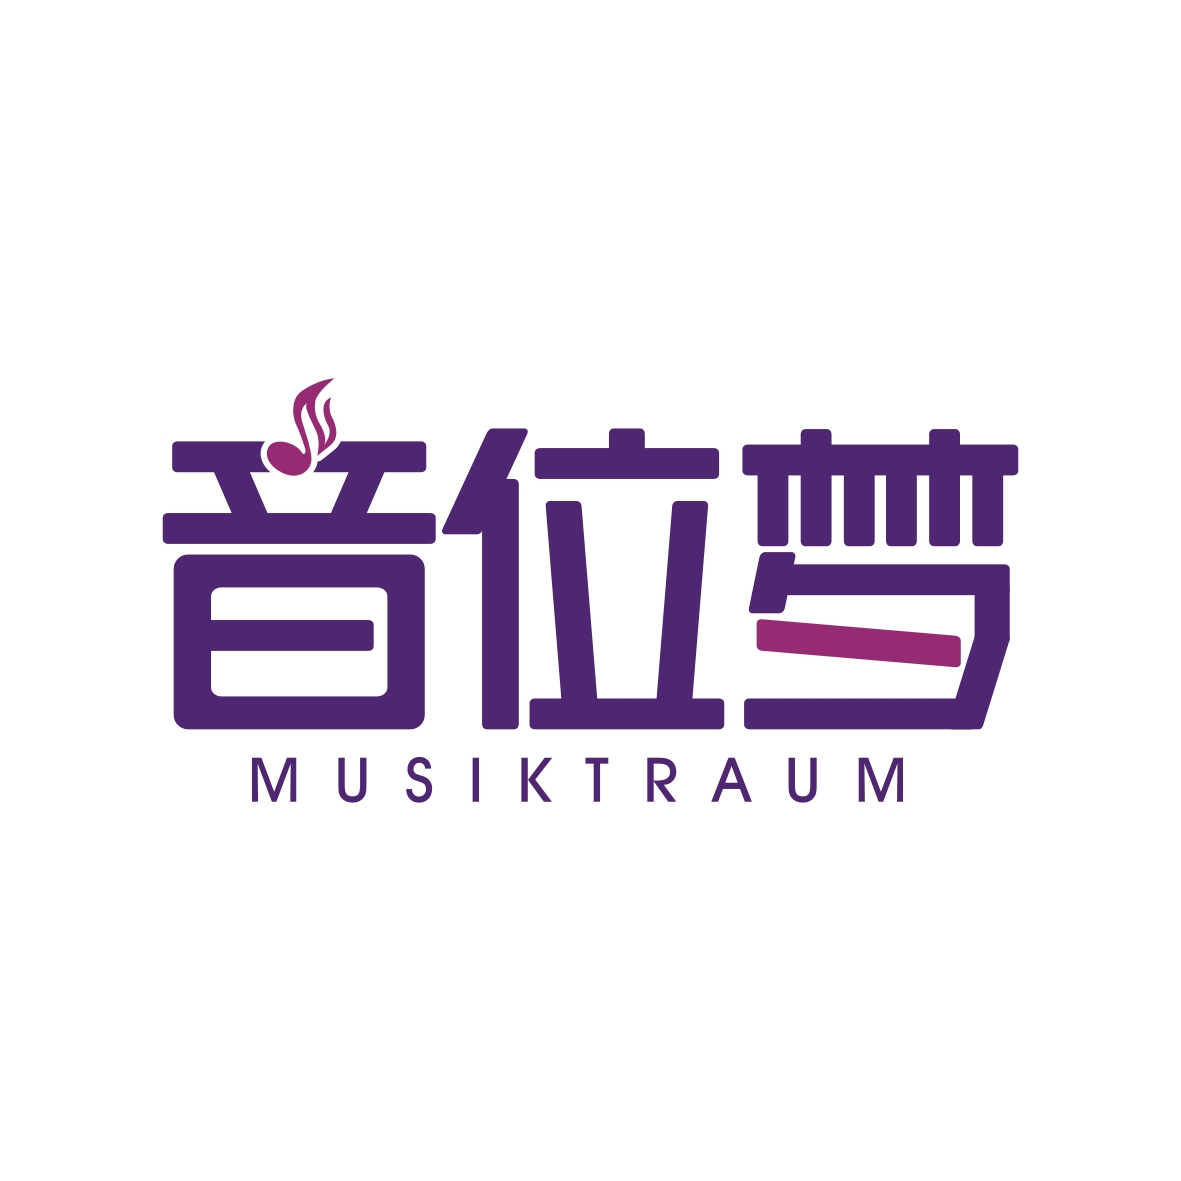 广州市龙曦生物科技有限公司商标音位梦 MUSIKTRAUM（43类）商标买卖平台报价，上哪个平台最省钱？